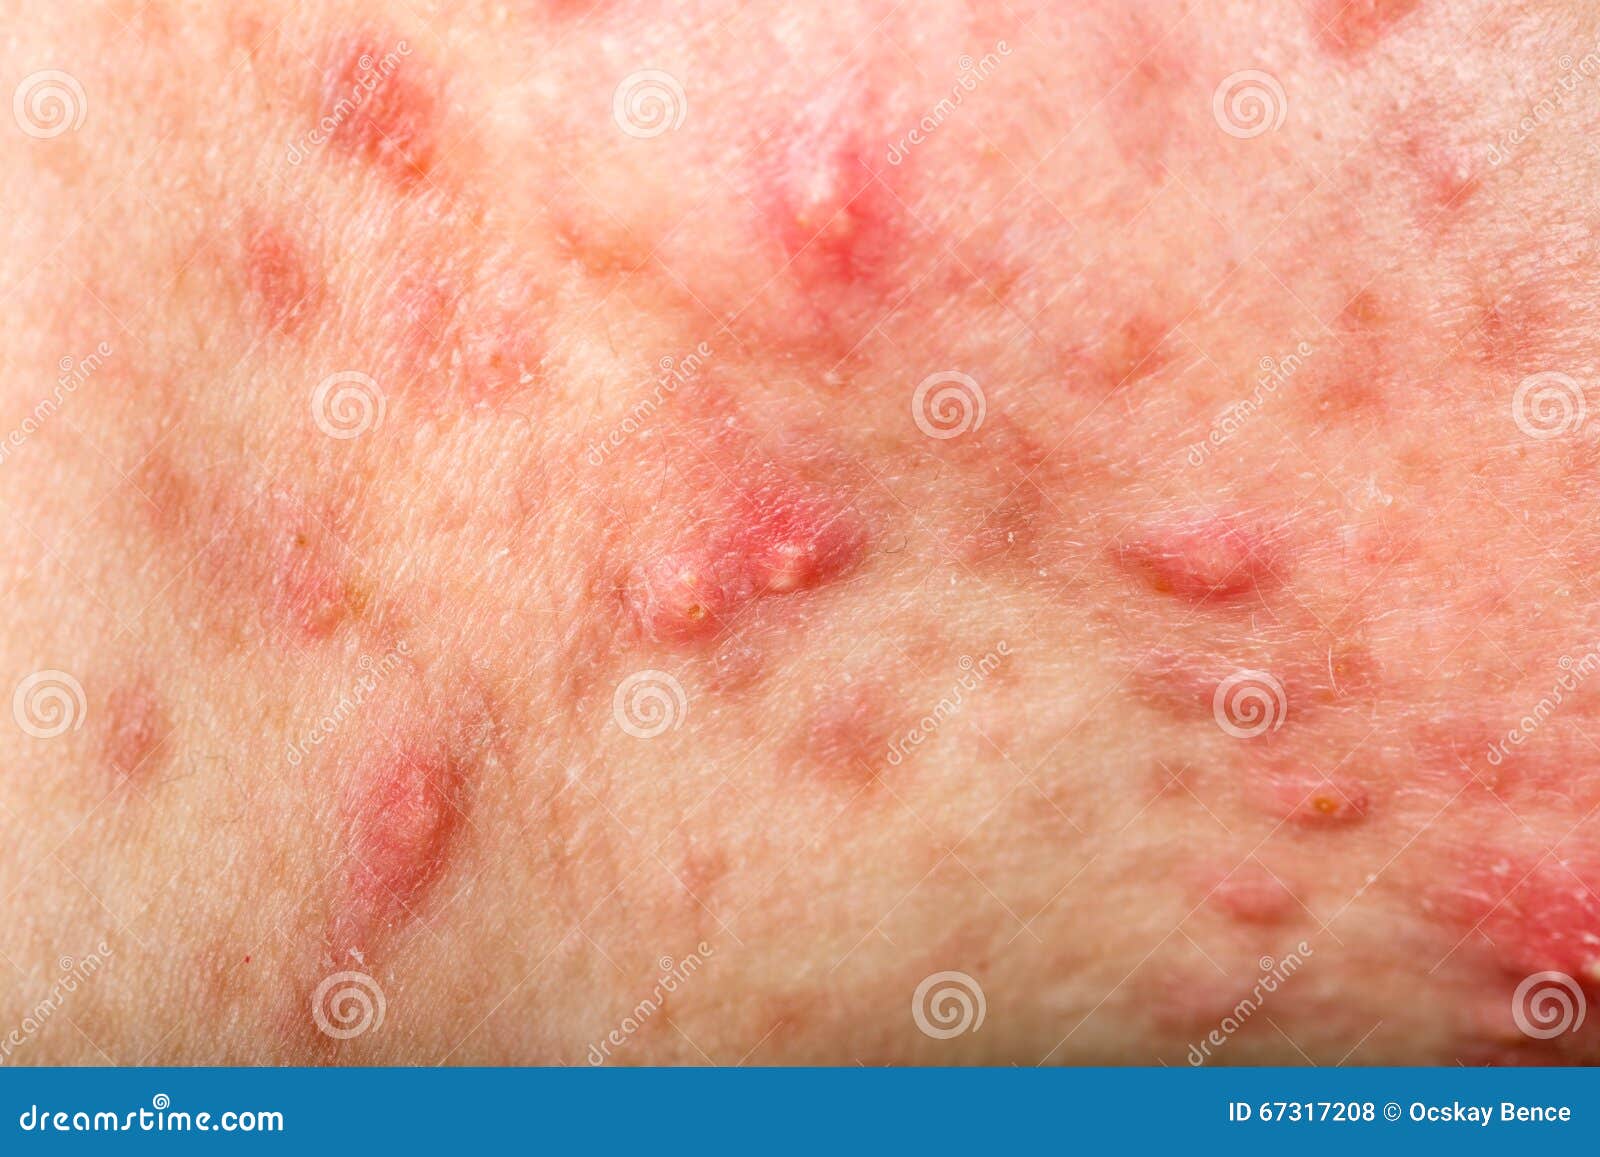 nodular cystic acne skin